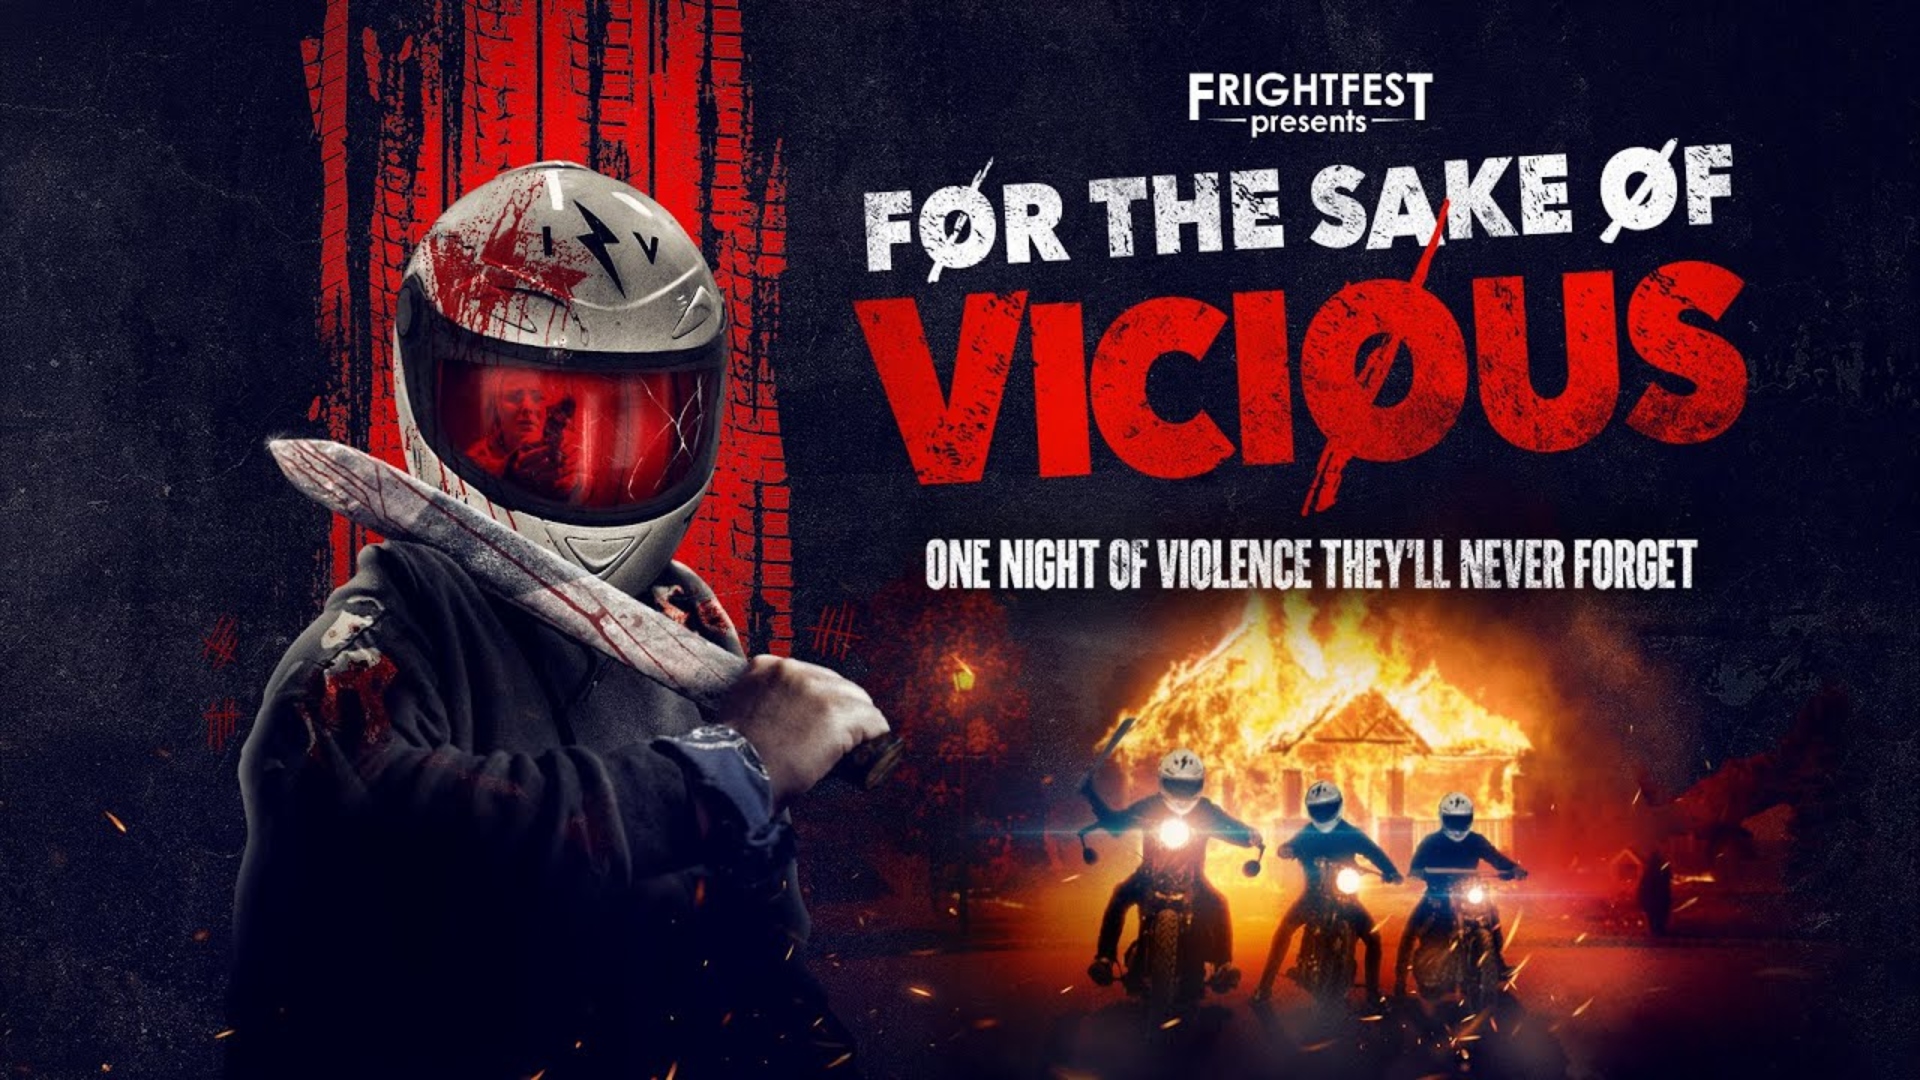 Estreno este fin de semana del thriller “For the Sake of Vicious”